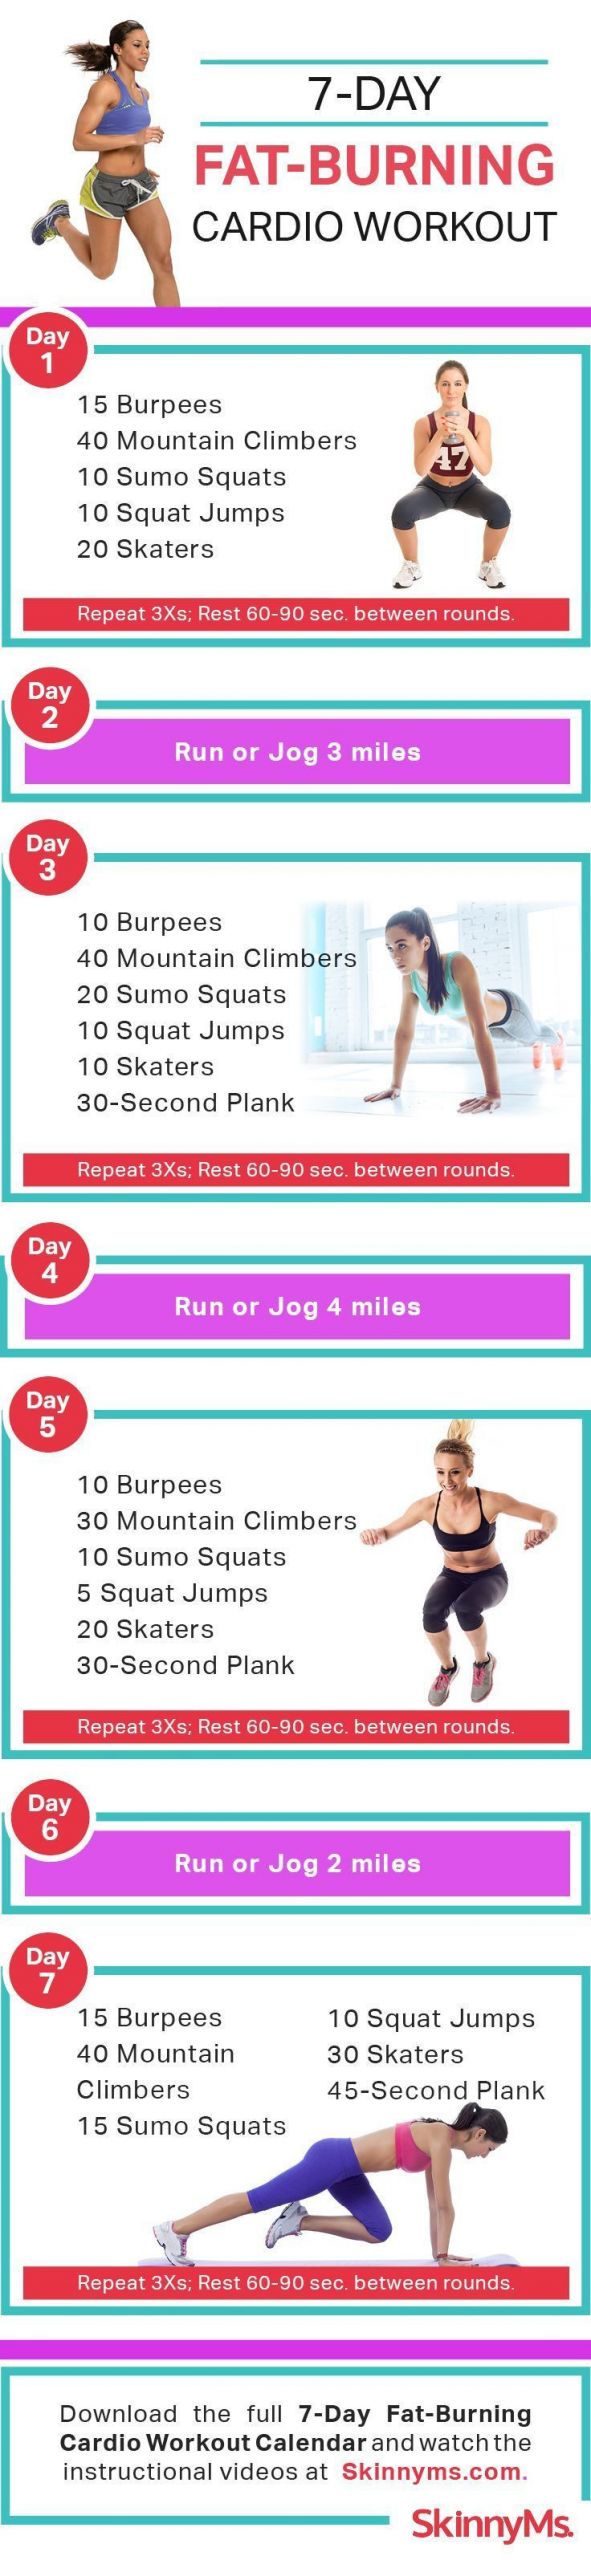 Cardio Fat Burning Workout
 De 25 bedste idéer inden for Planet fitness på Pinterest